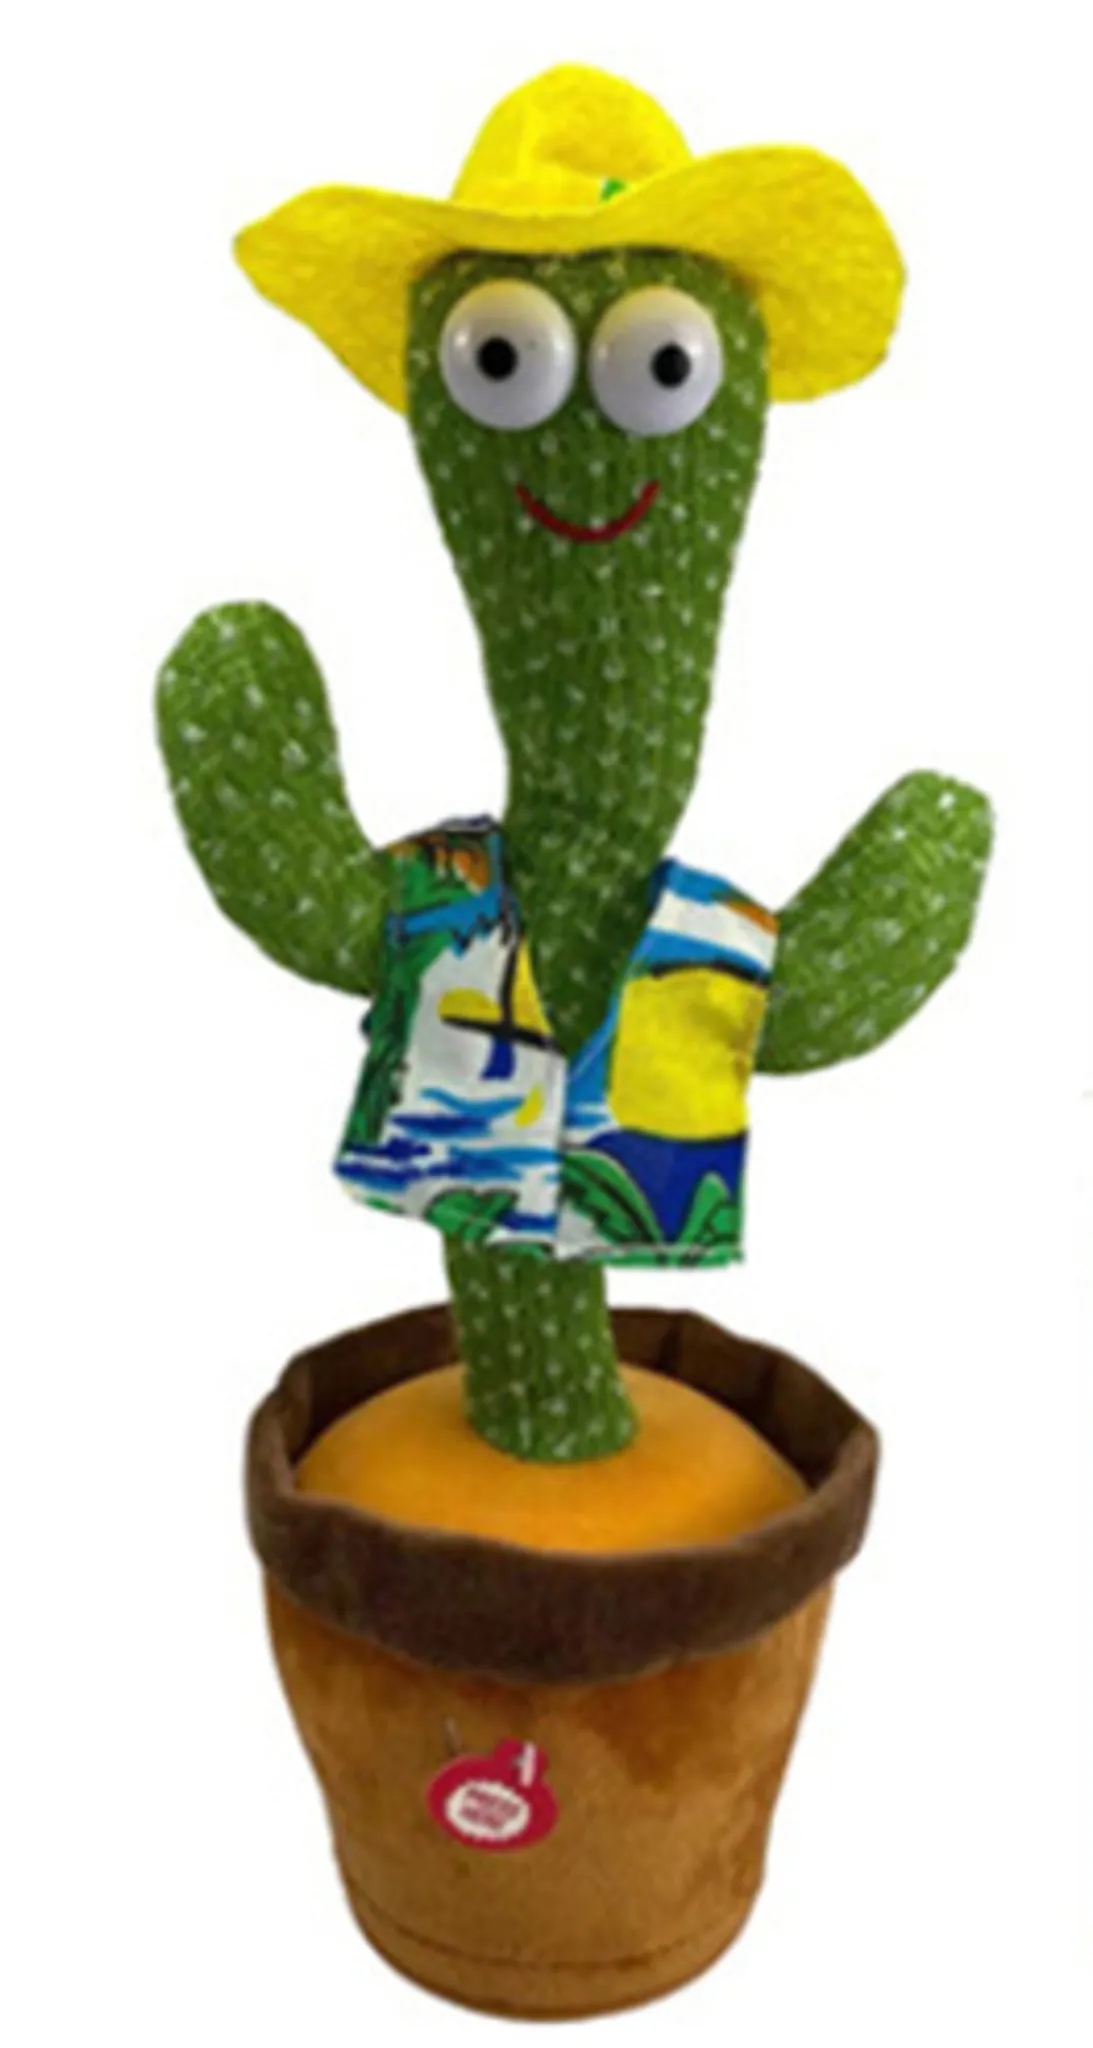 Sprechender Kaktus Plüsch-Spielzeug,Tanzendes